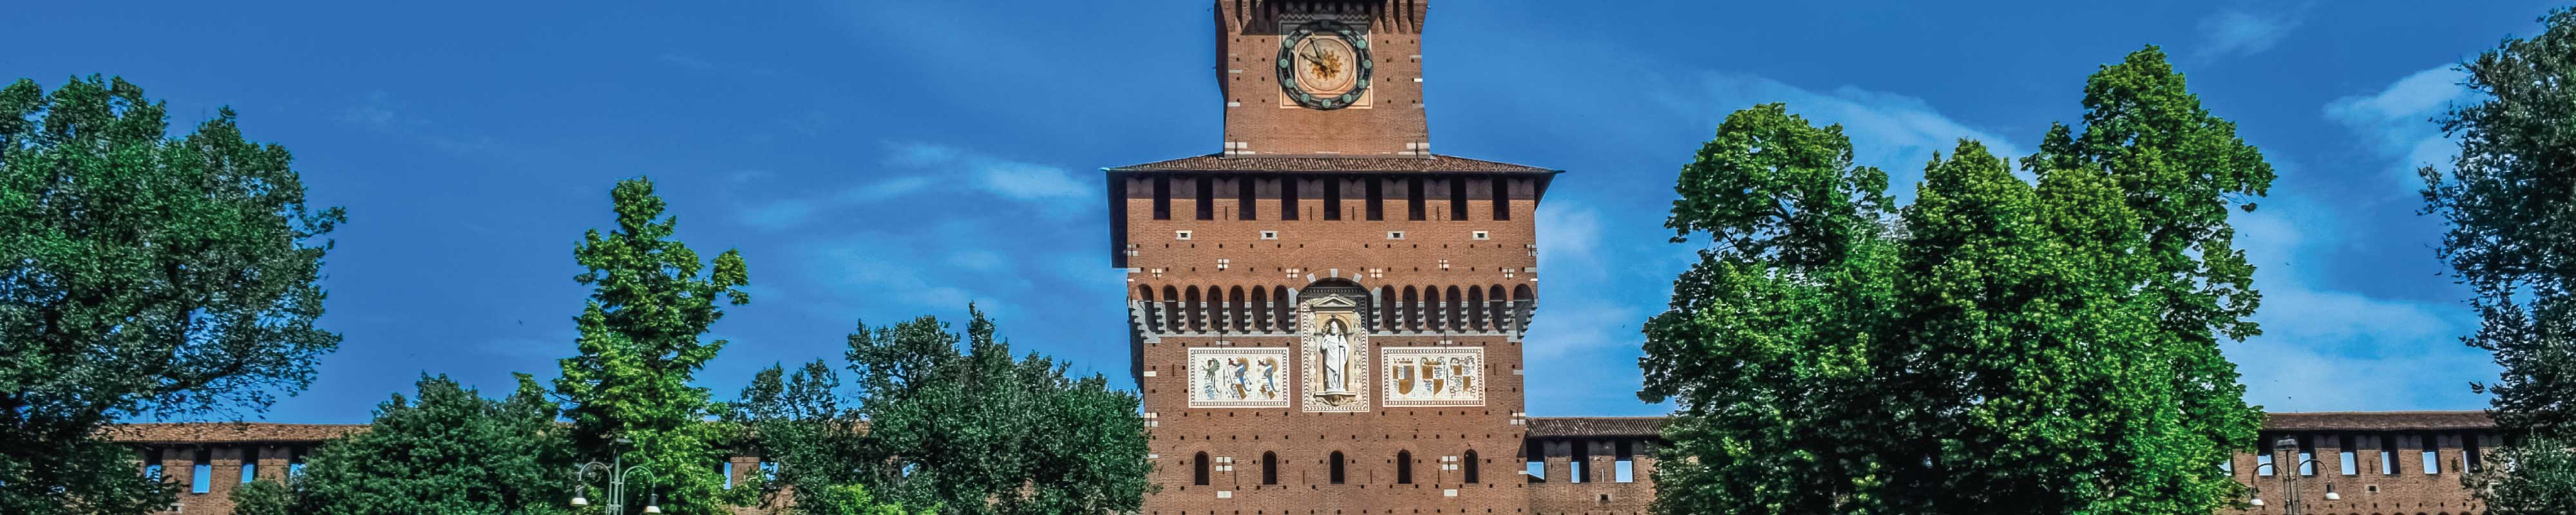 Depósito de Bagagem | Castello Sforzesco em Milão - Nannybag